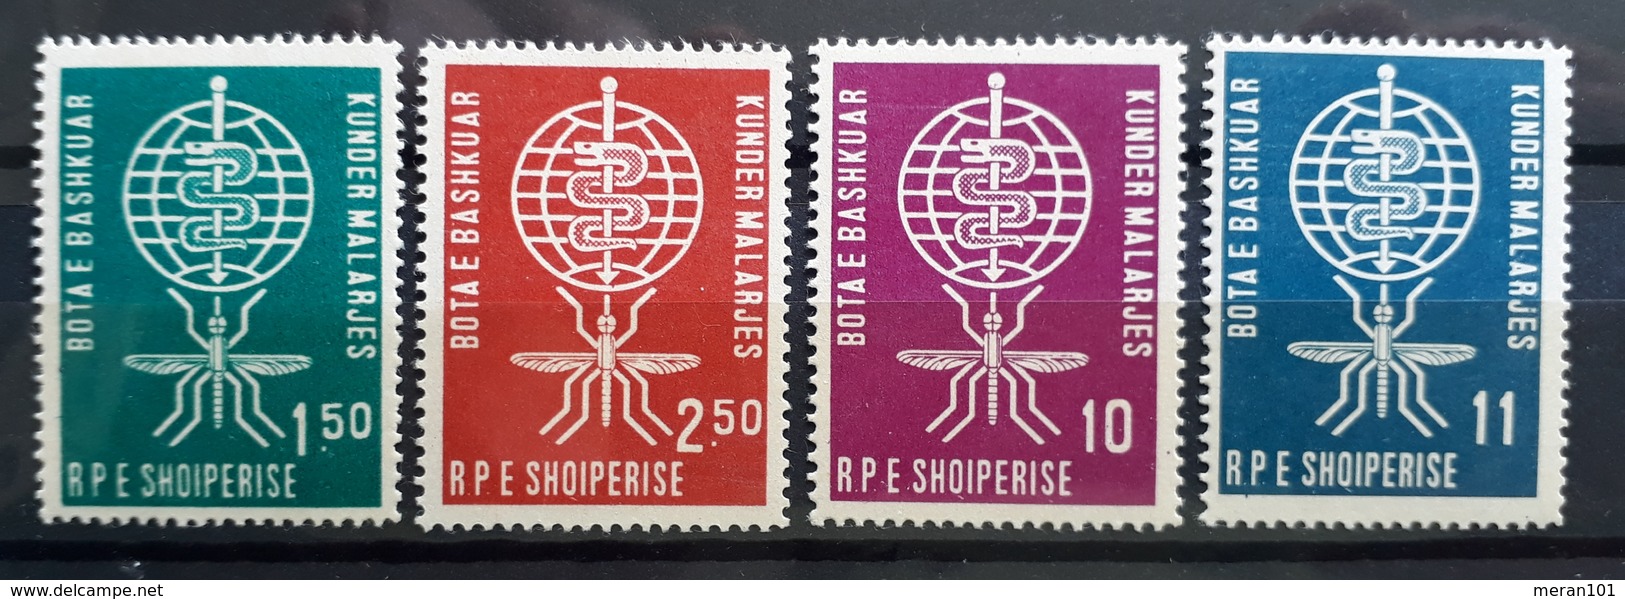 Albanien 1962, Mi 650-53 MNH Postfrisch - Albanie